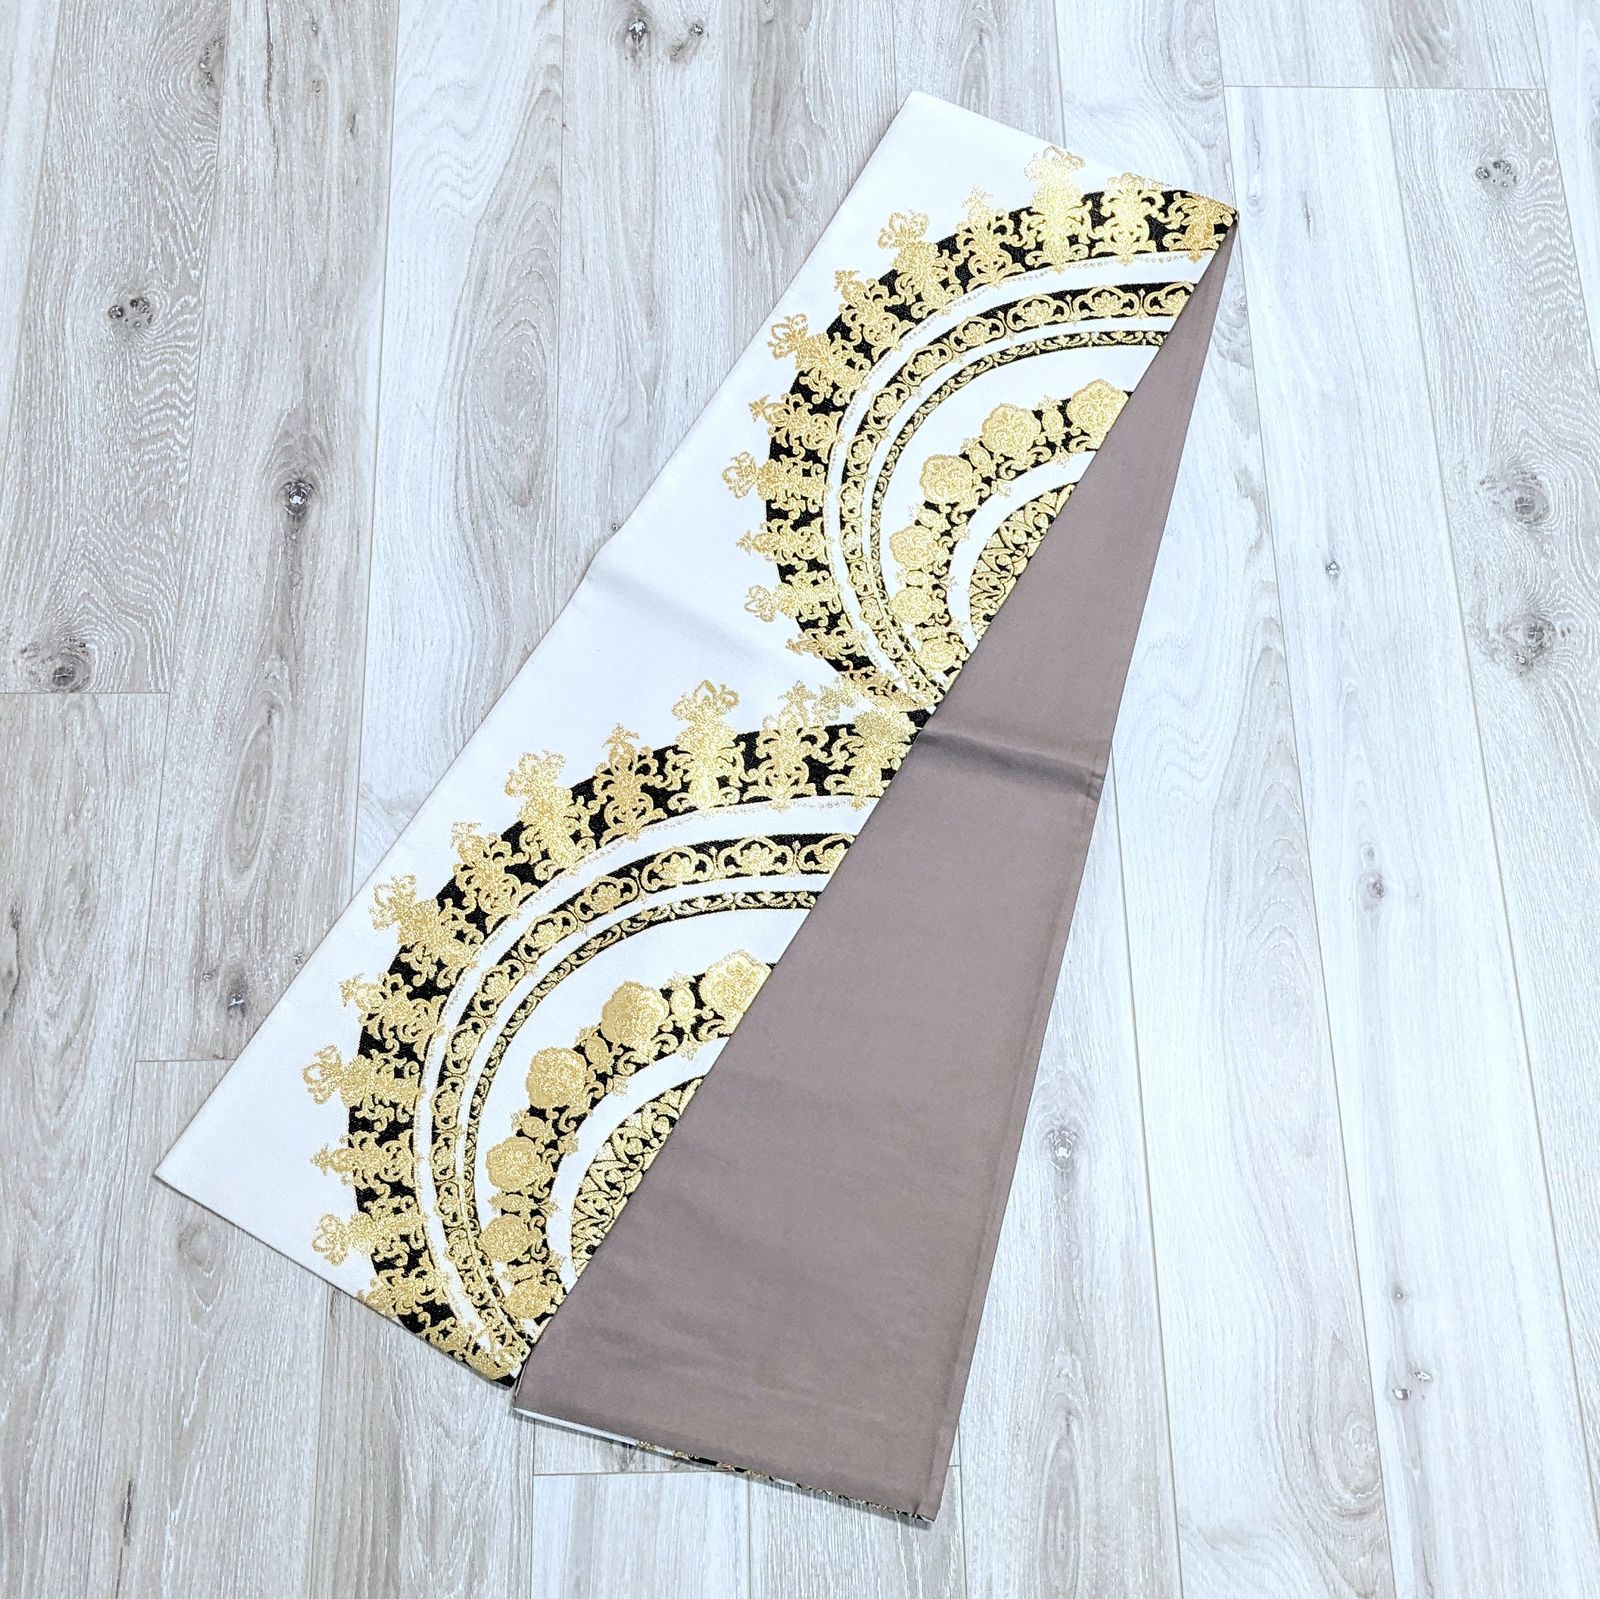 【新品・仕立て上がり】正絹 袋帯 白 薄いベージュ ゴールド ub264綾袋帯